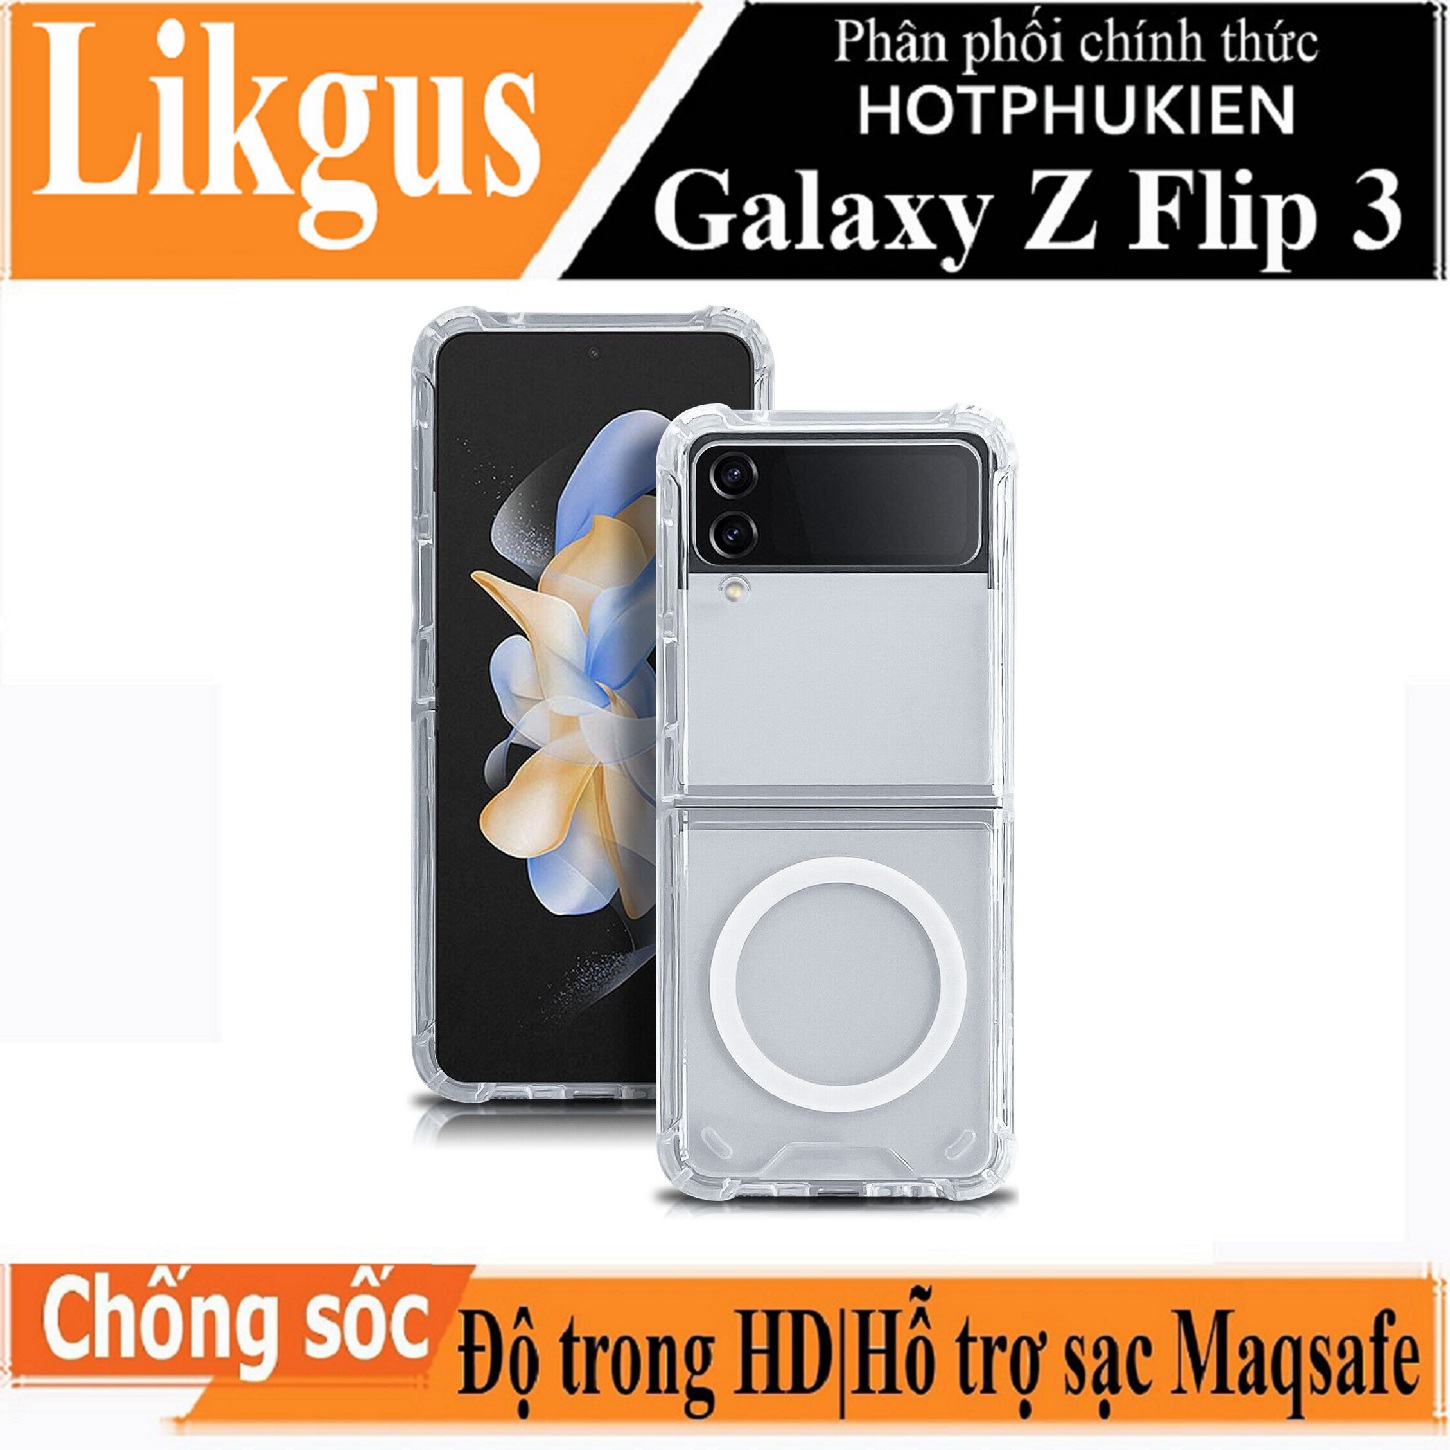 Ốp lưng chống sốc trong suốt hỗ trợ sạc Magsafe cho Samsung Galaxy Z Flip 3 hiệu Likgus Magsafe Magetic Case siêu mỏng 1.5mm, độ trong tuyệt đối, chống trầy xước, chống ố vàng, tản nhiệt tốt